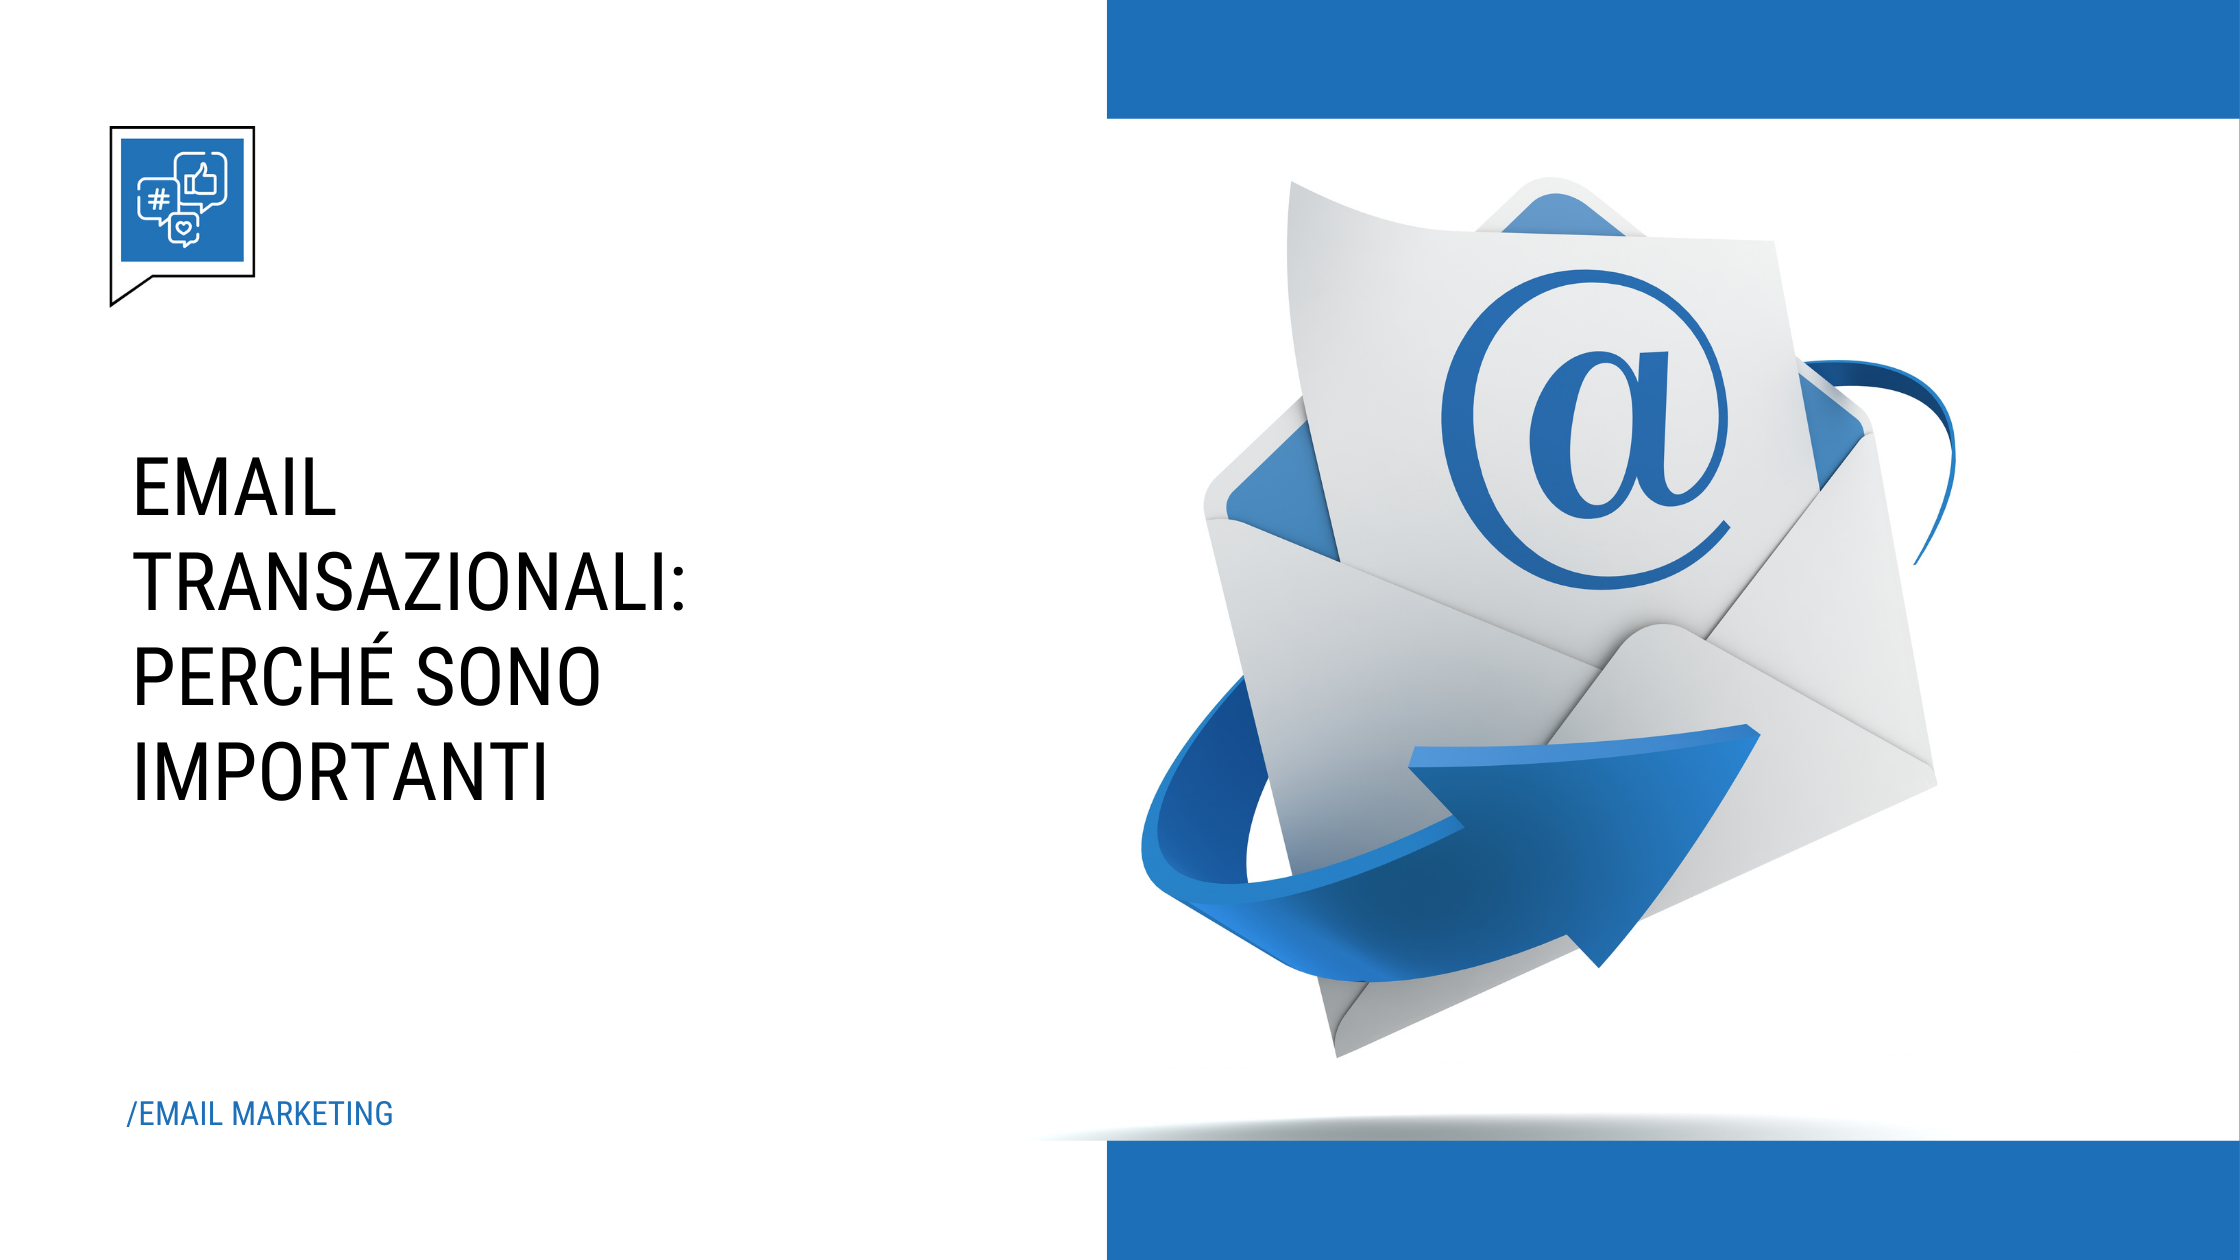 E-mail marketing: perché utilizzare le email transazionali